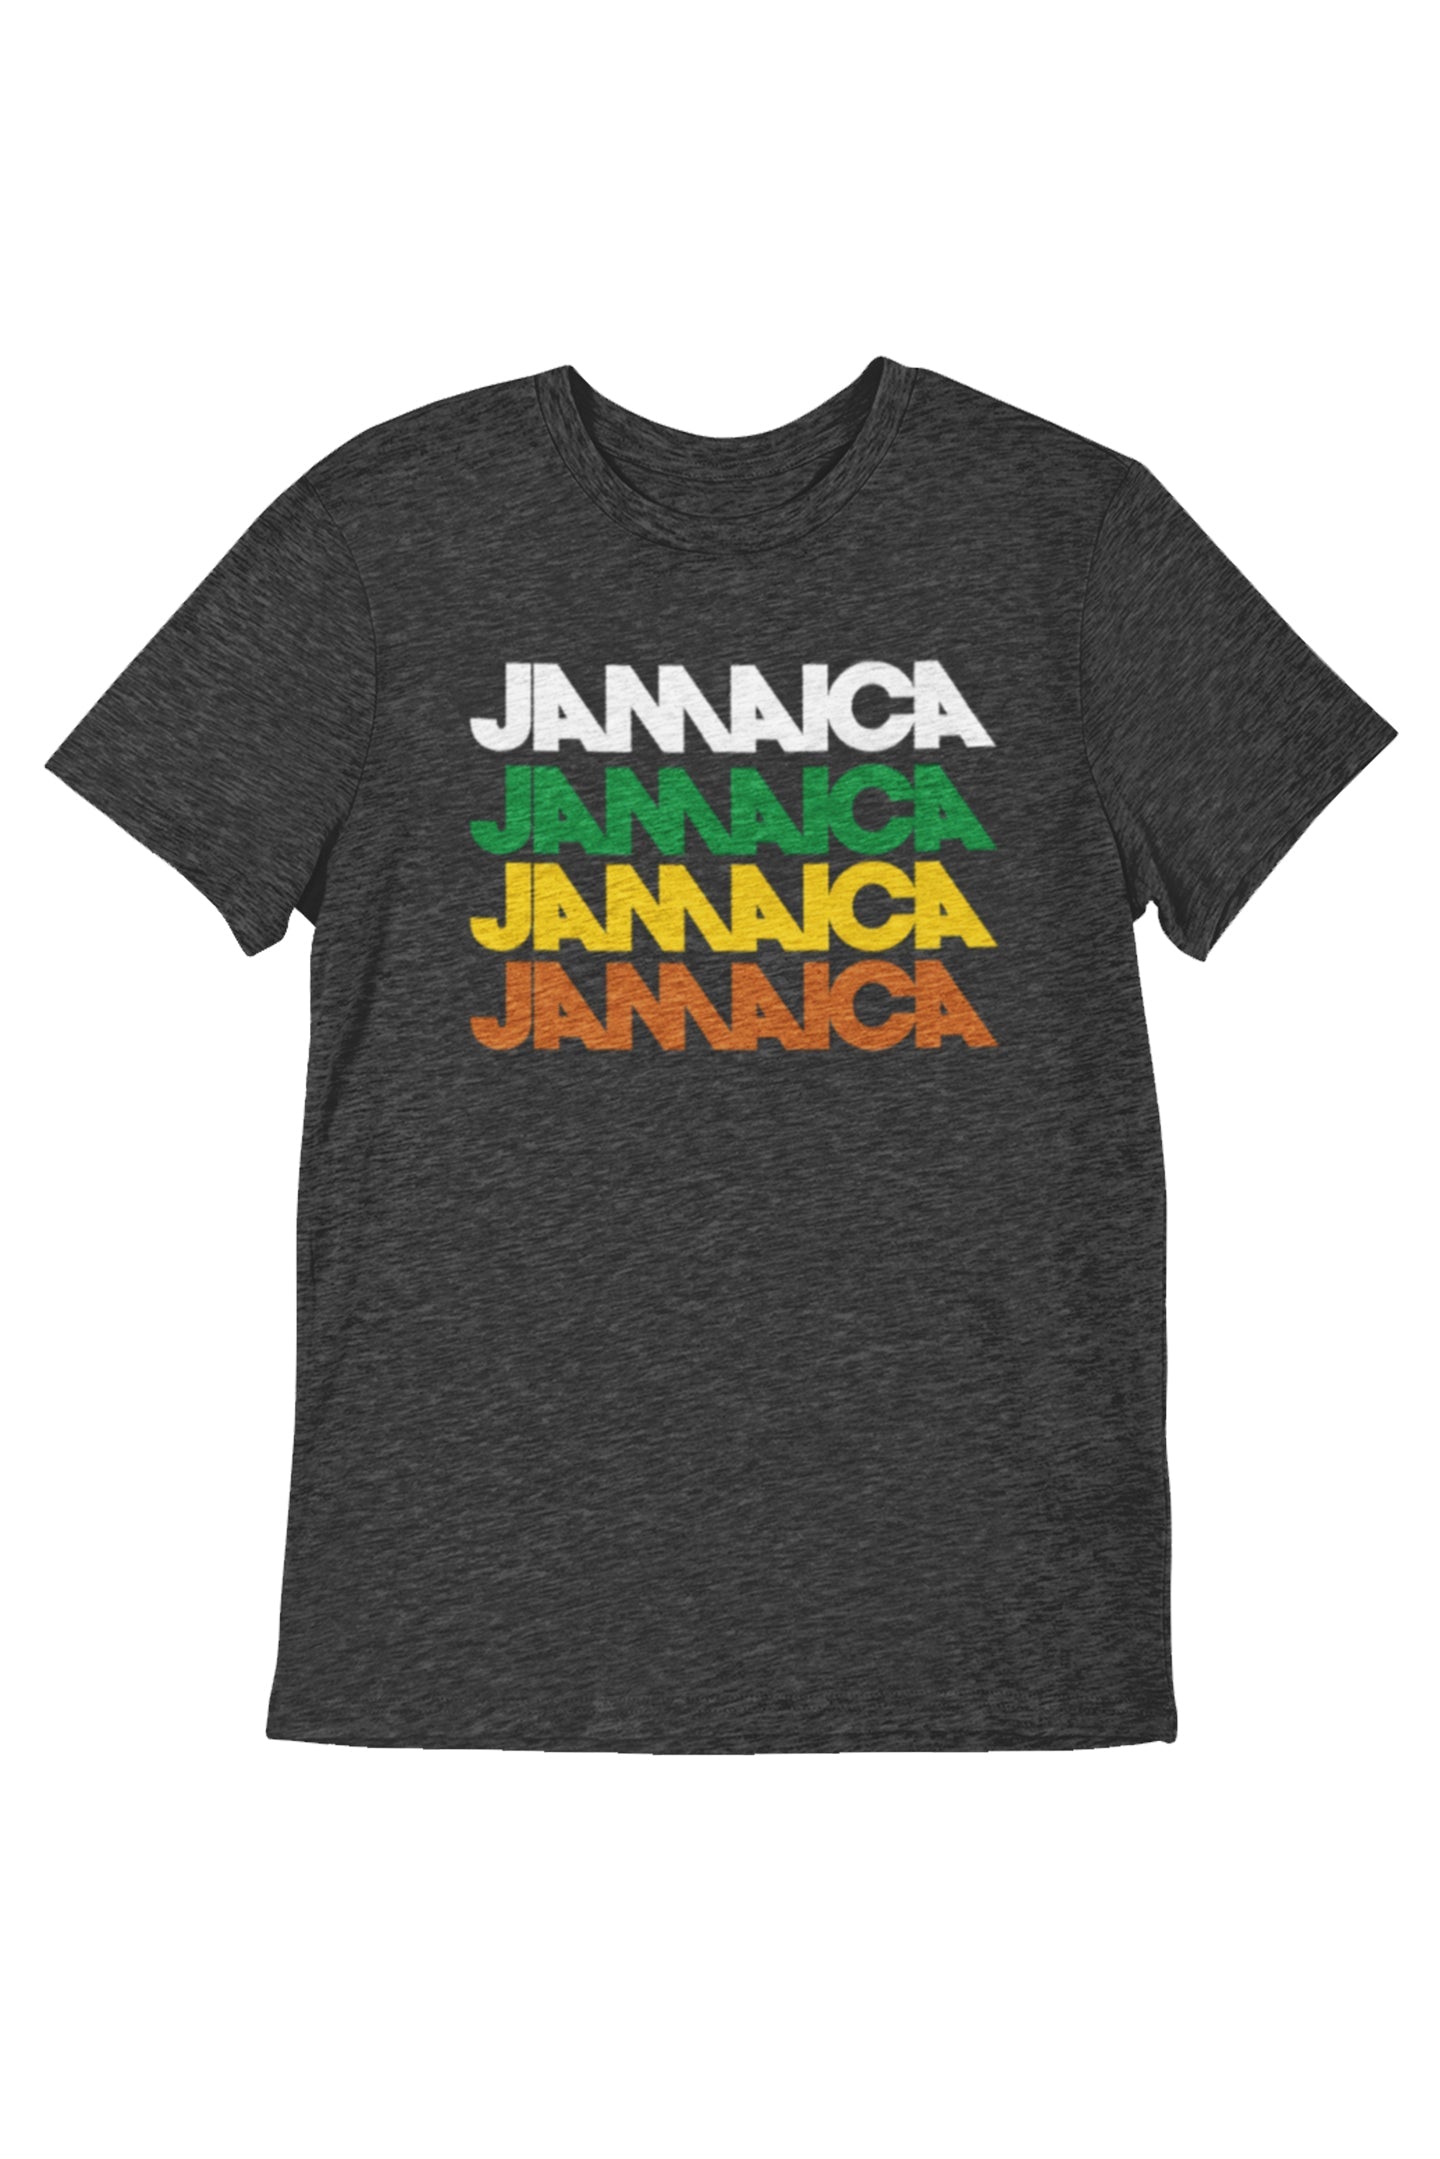 Jamaica 4 - Men's